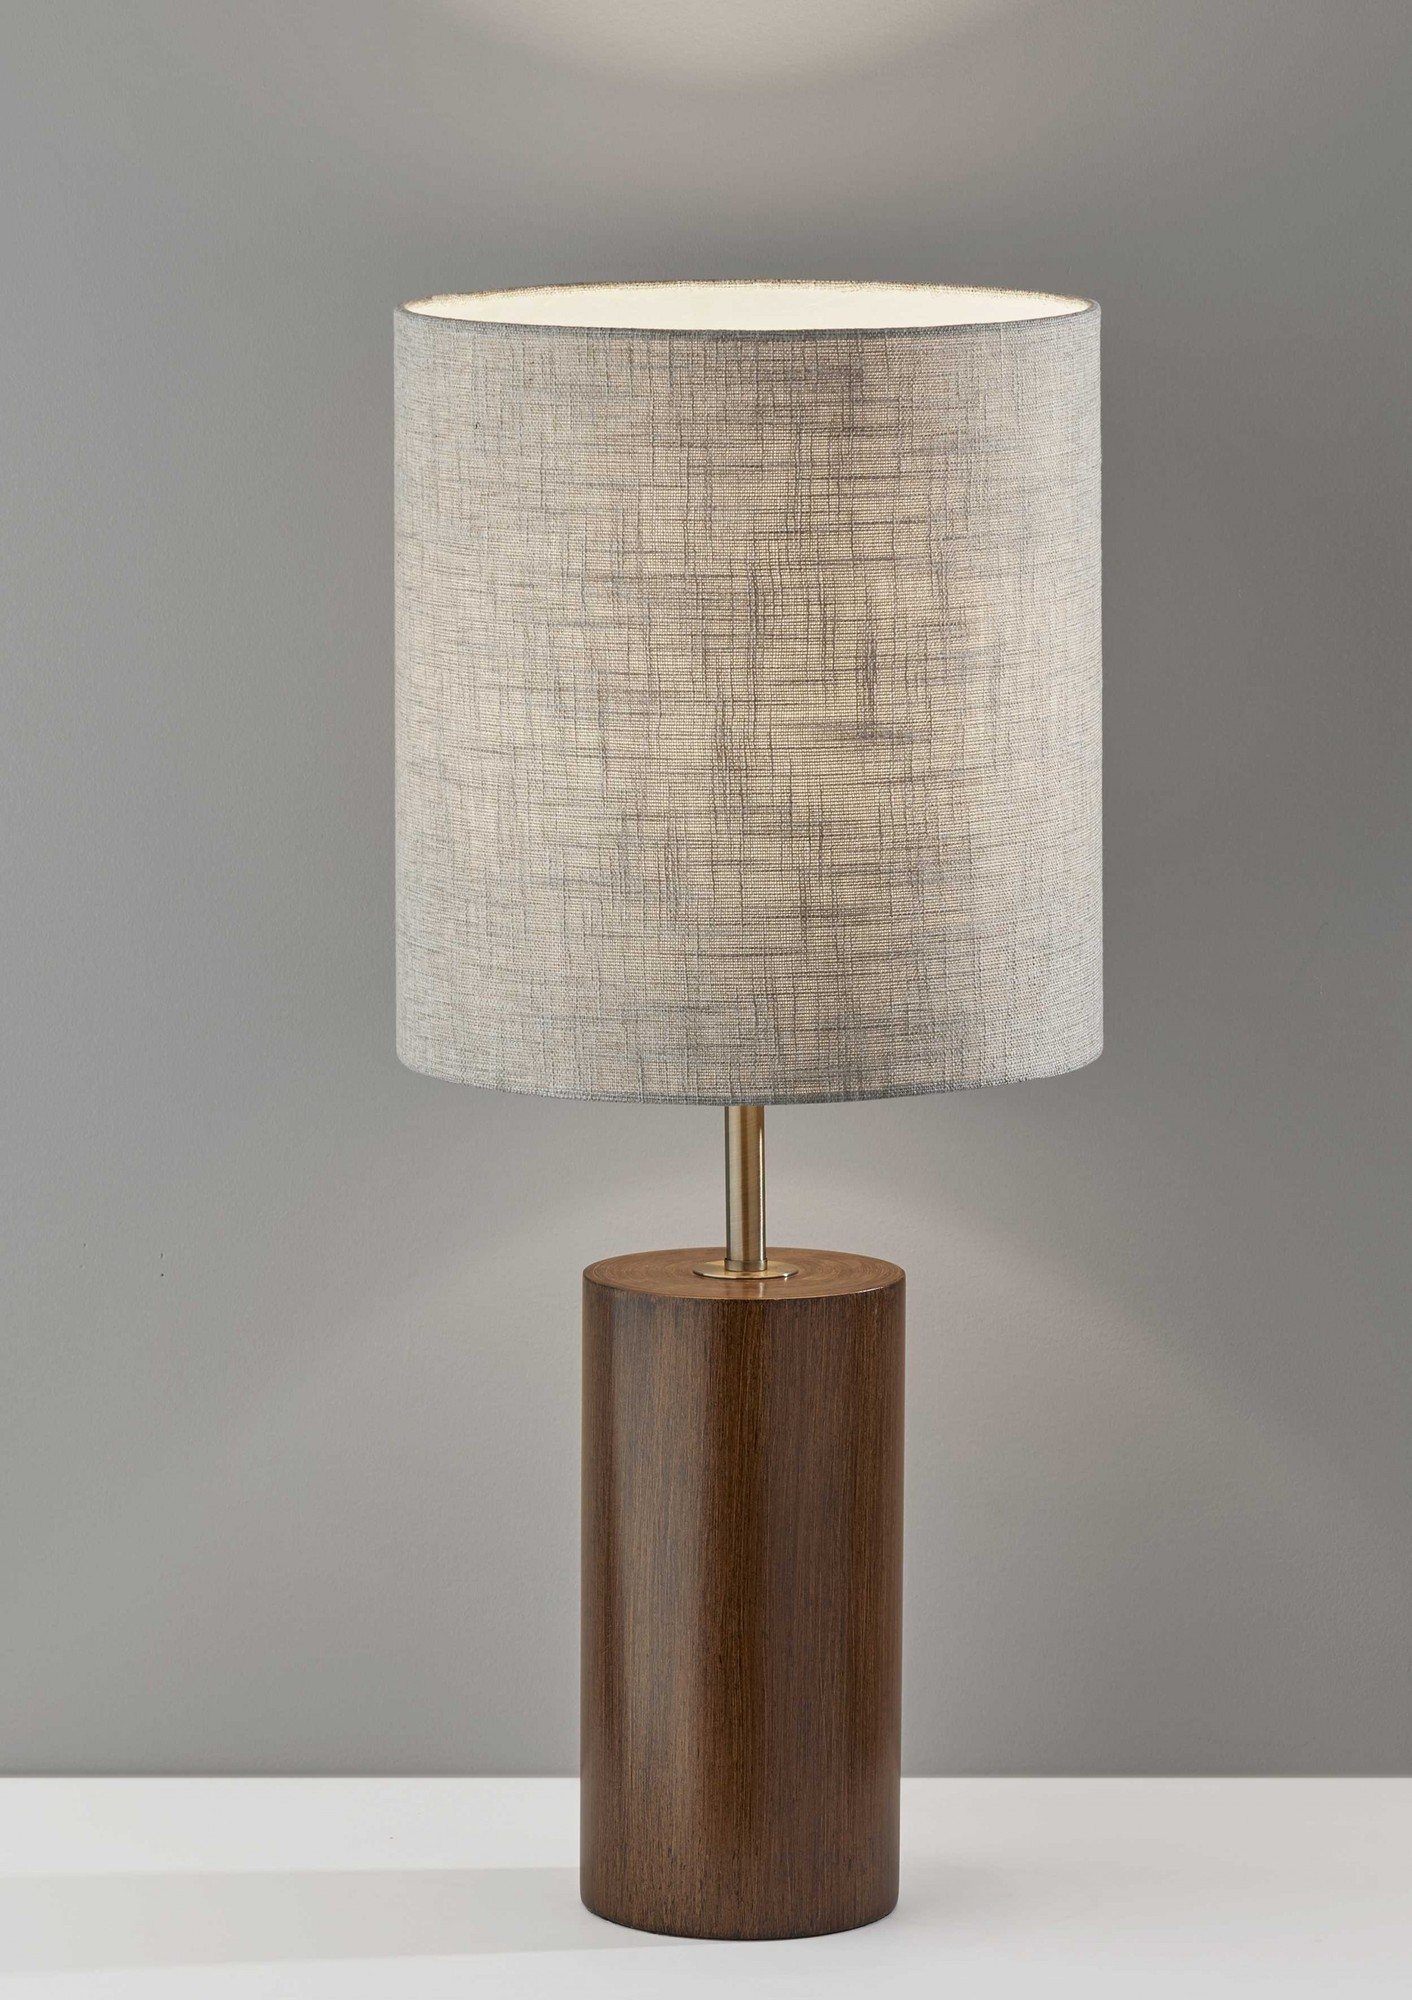 13" X 13" X 30.5" Walnut Wood Table Lamp